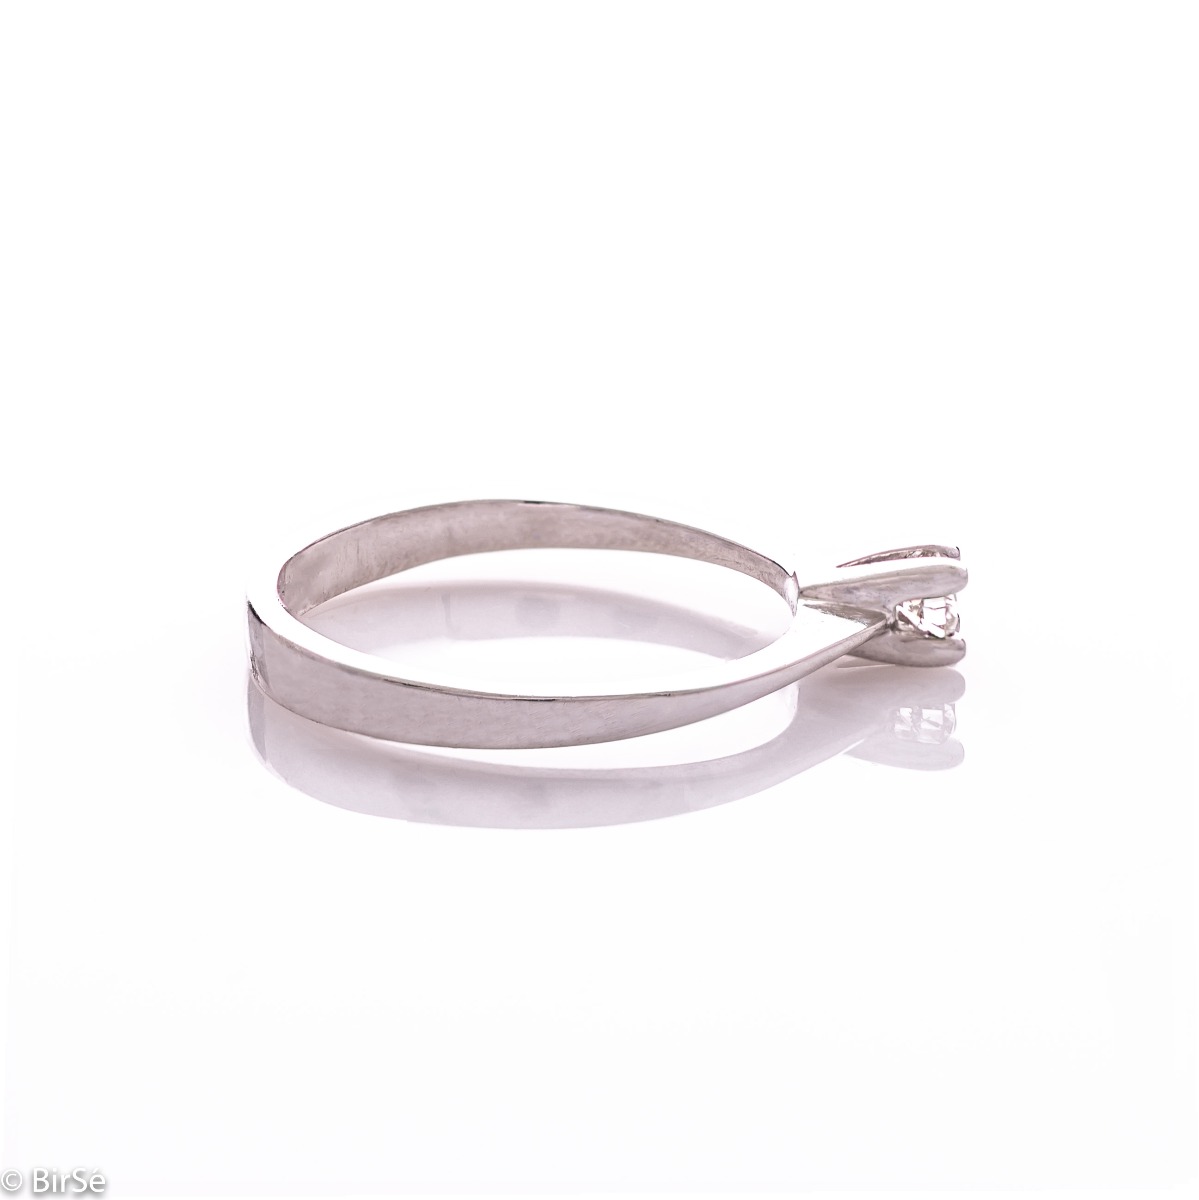 Златен годежен пръстен с диамант - 0,110 ct.